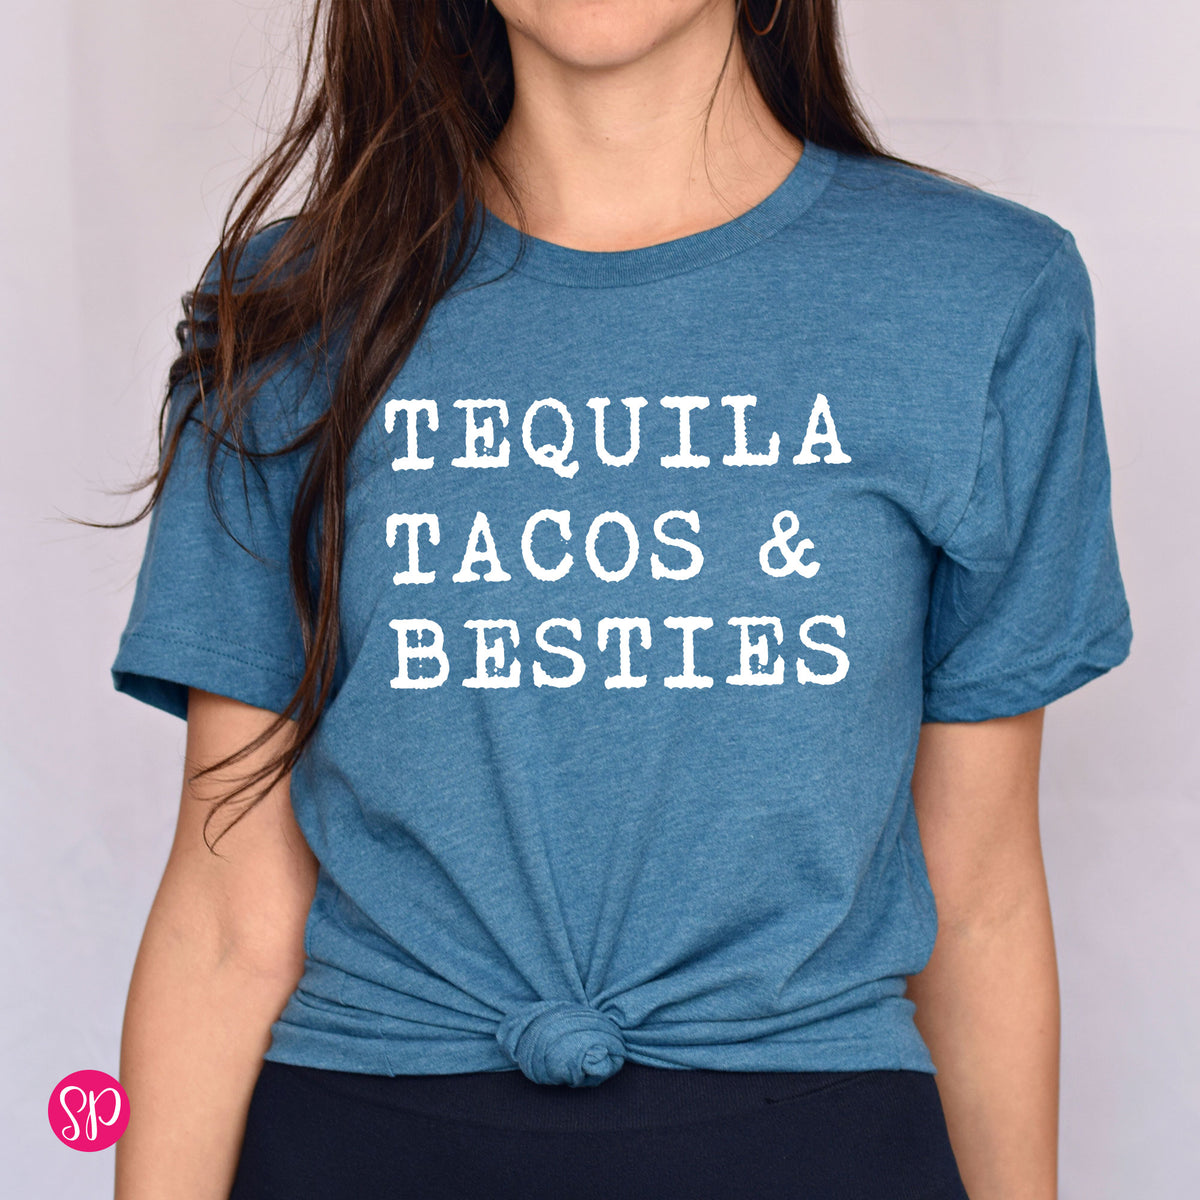 Tequila Tacos & Besties Unisex T-Shirt